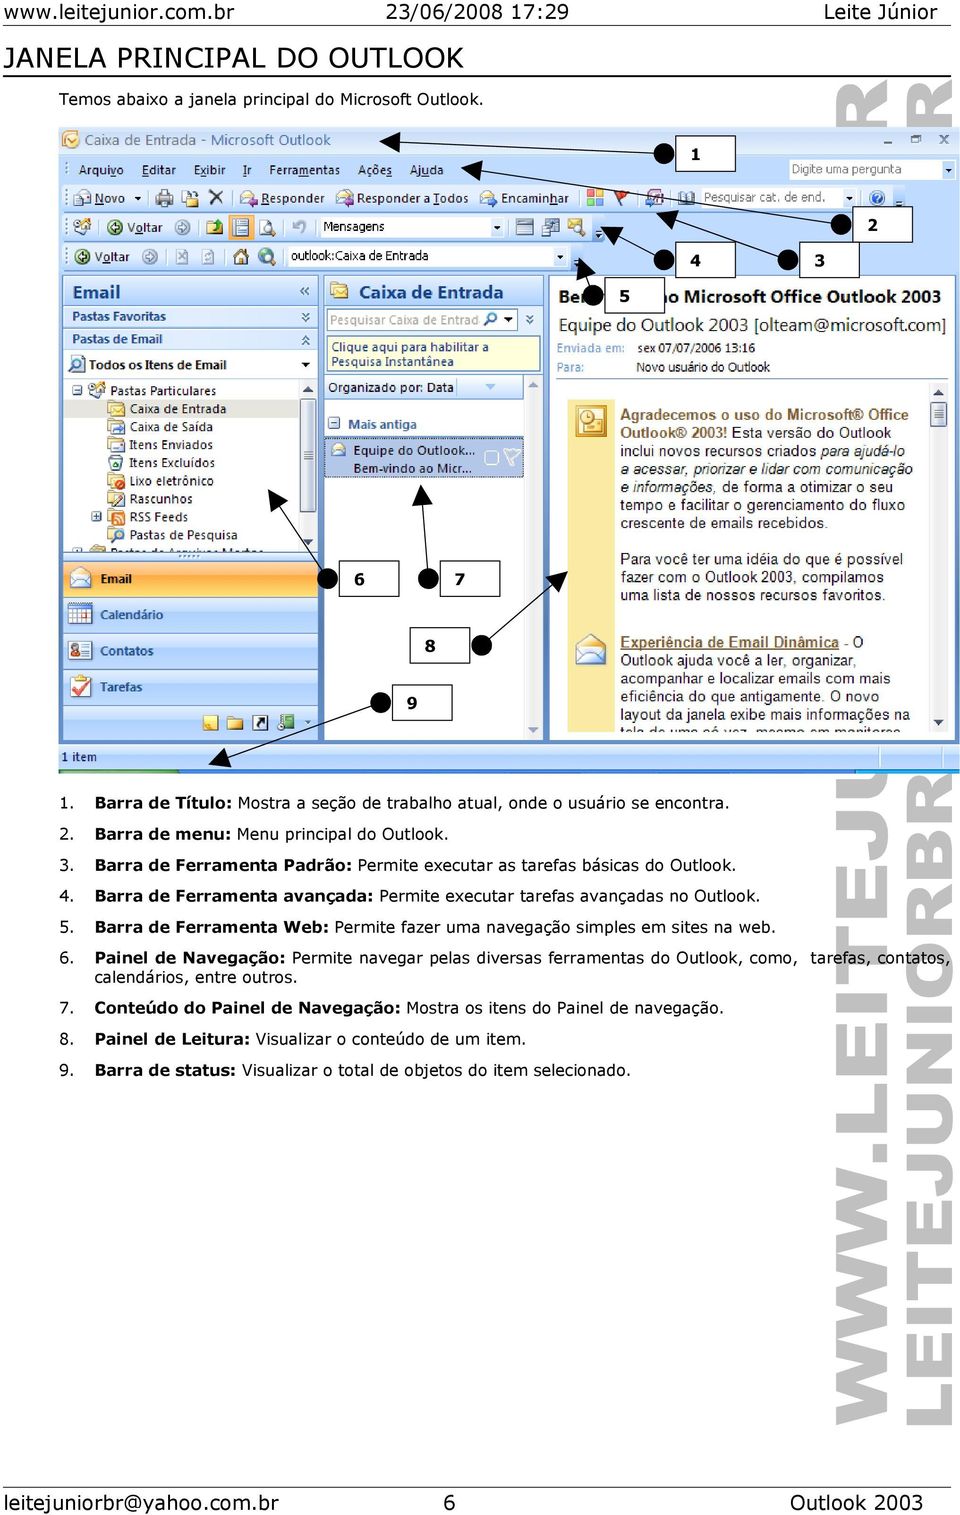 Barra de Ferramenta Web: Permite fazer uma navegação simples em sites na web. 6.